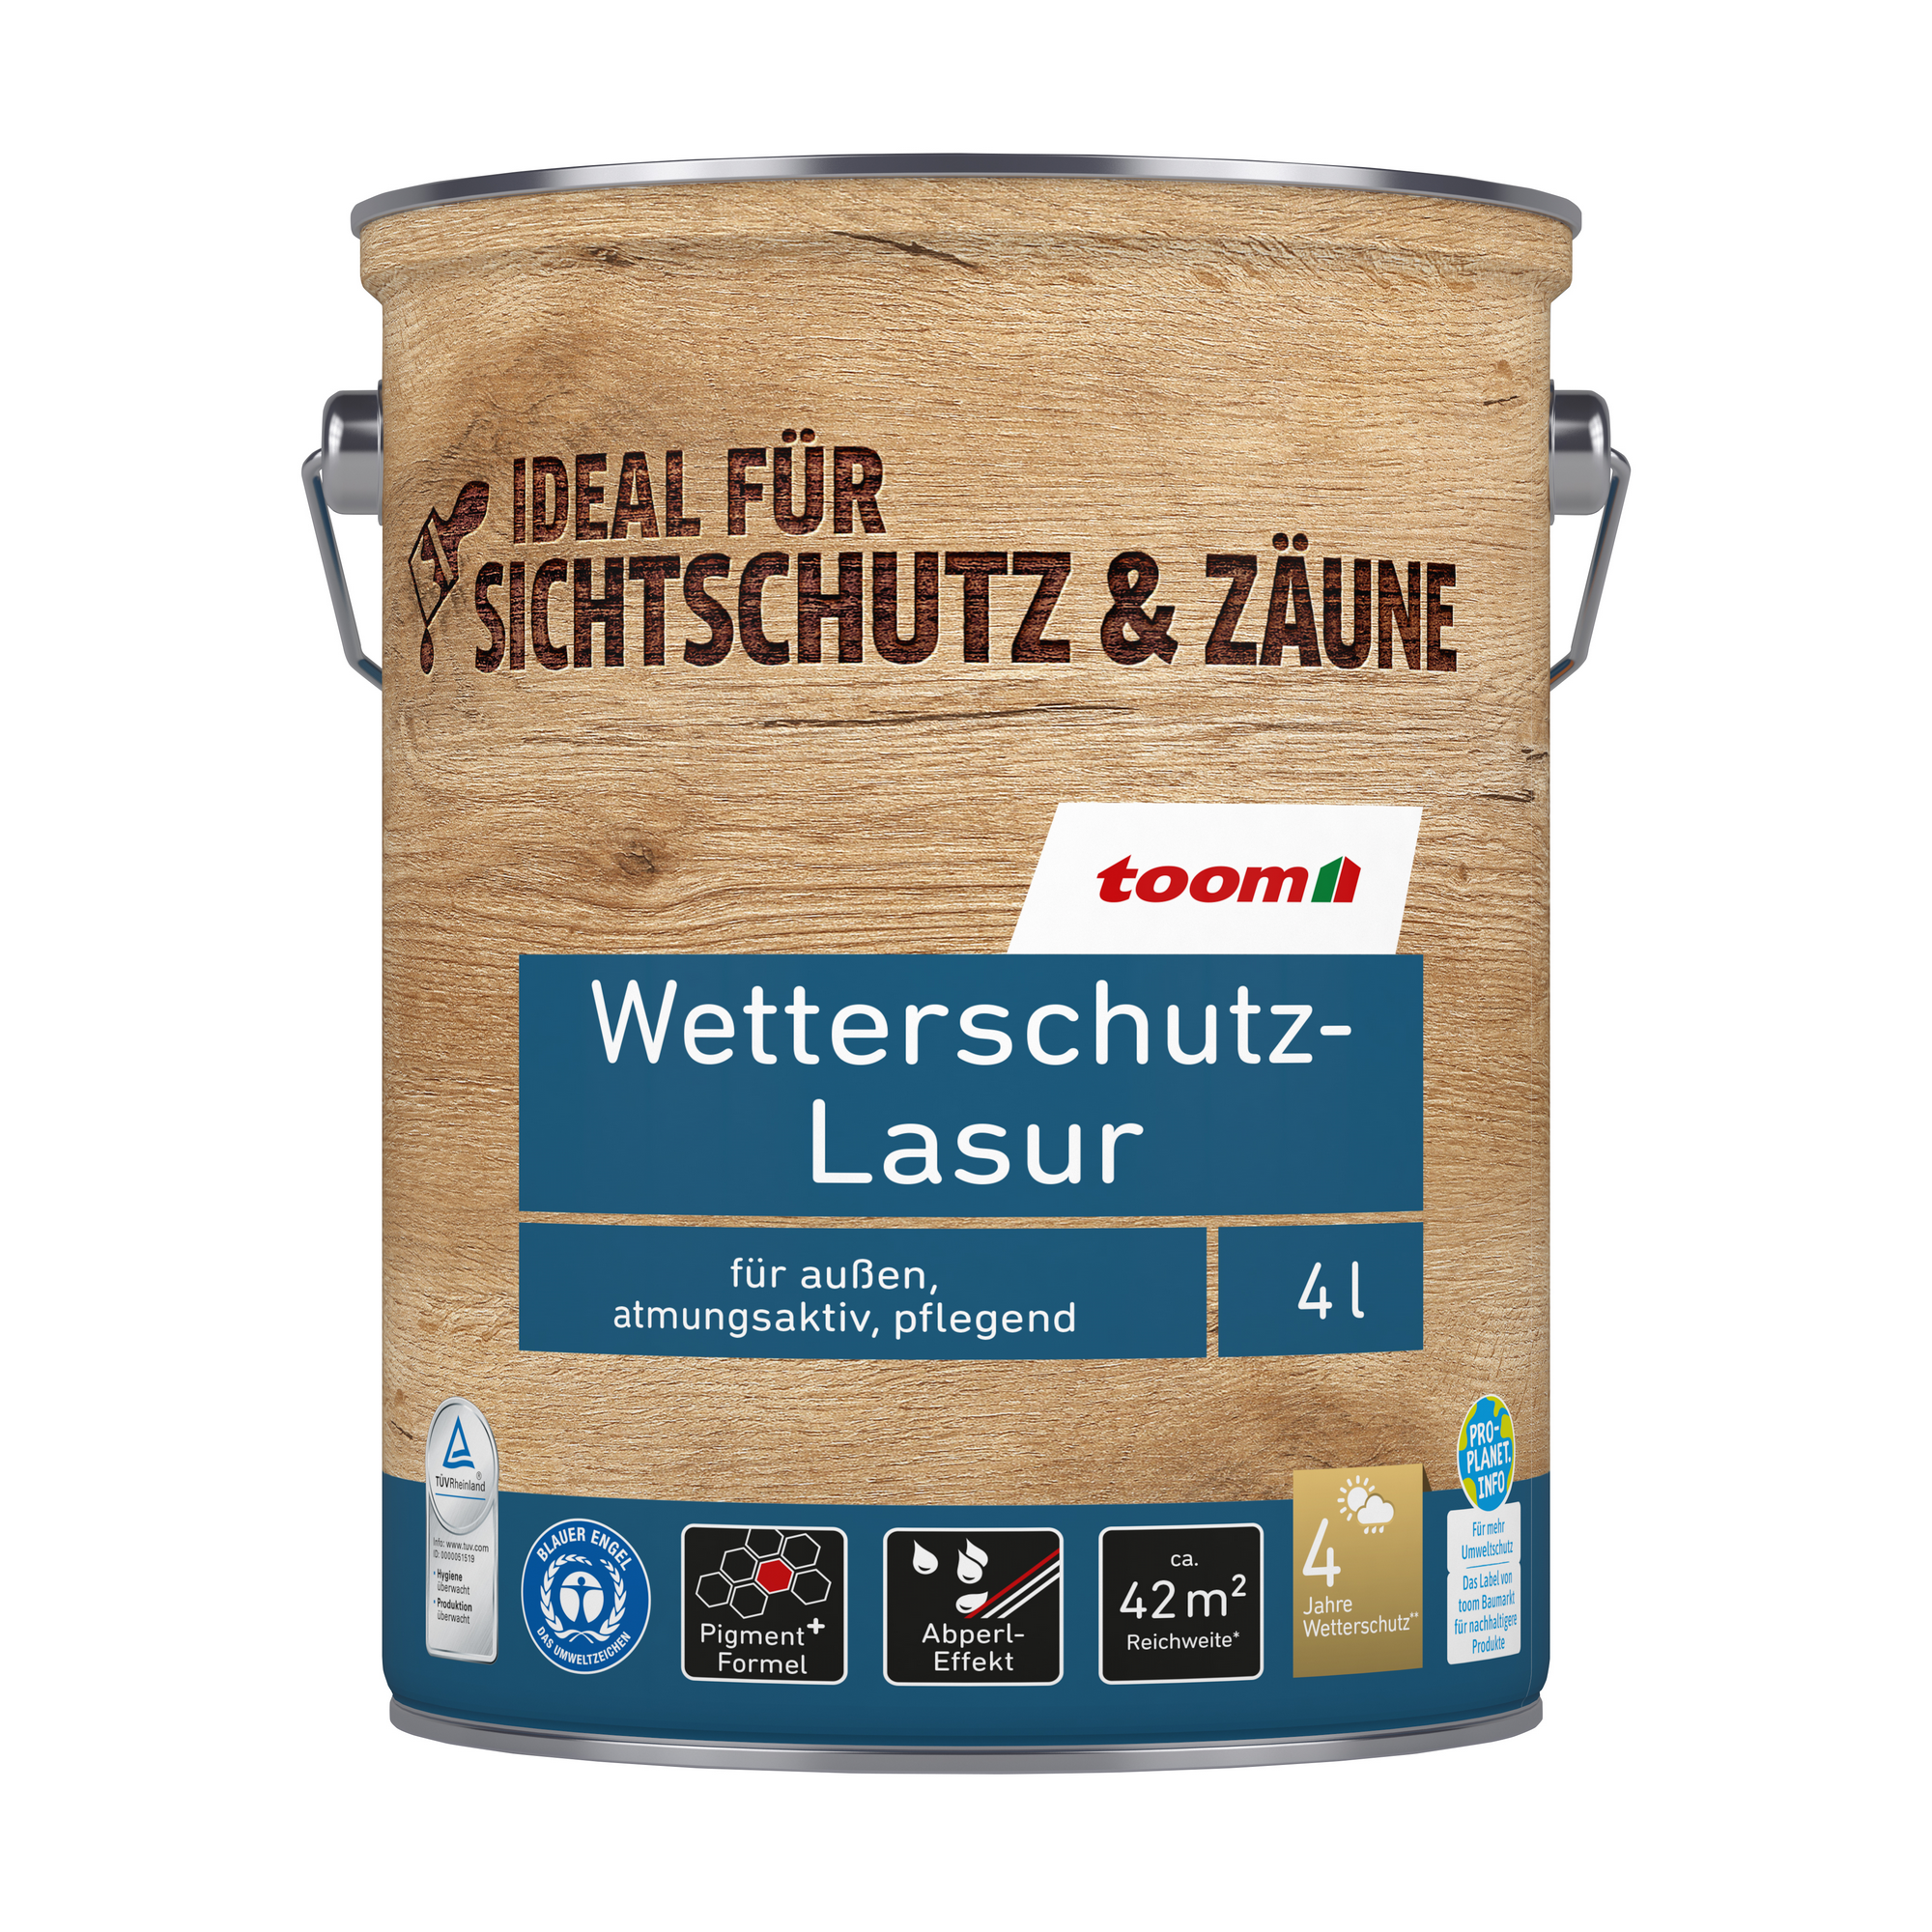 Wetterschutz-Lasur silbergrau 4 l + product picture